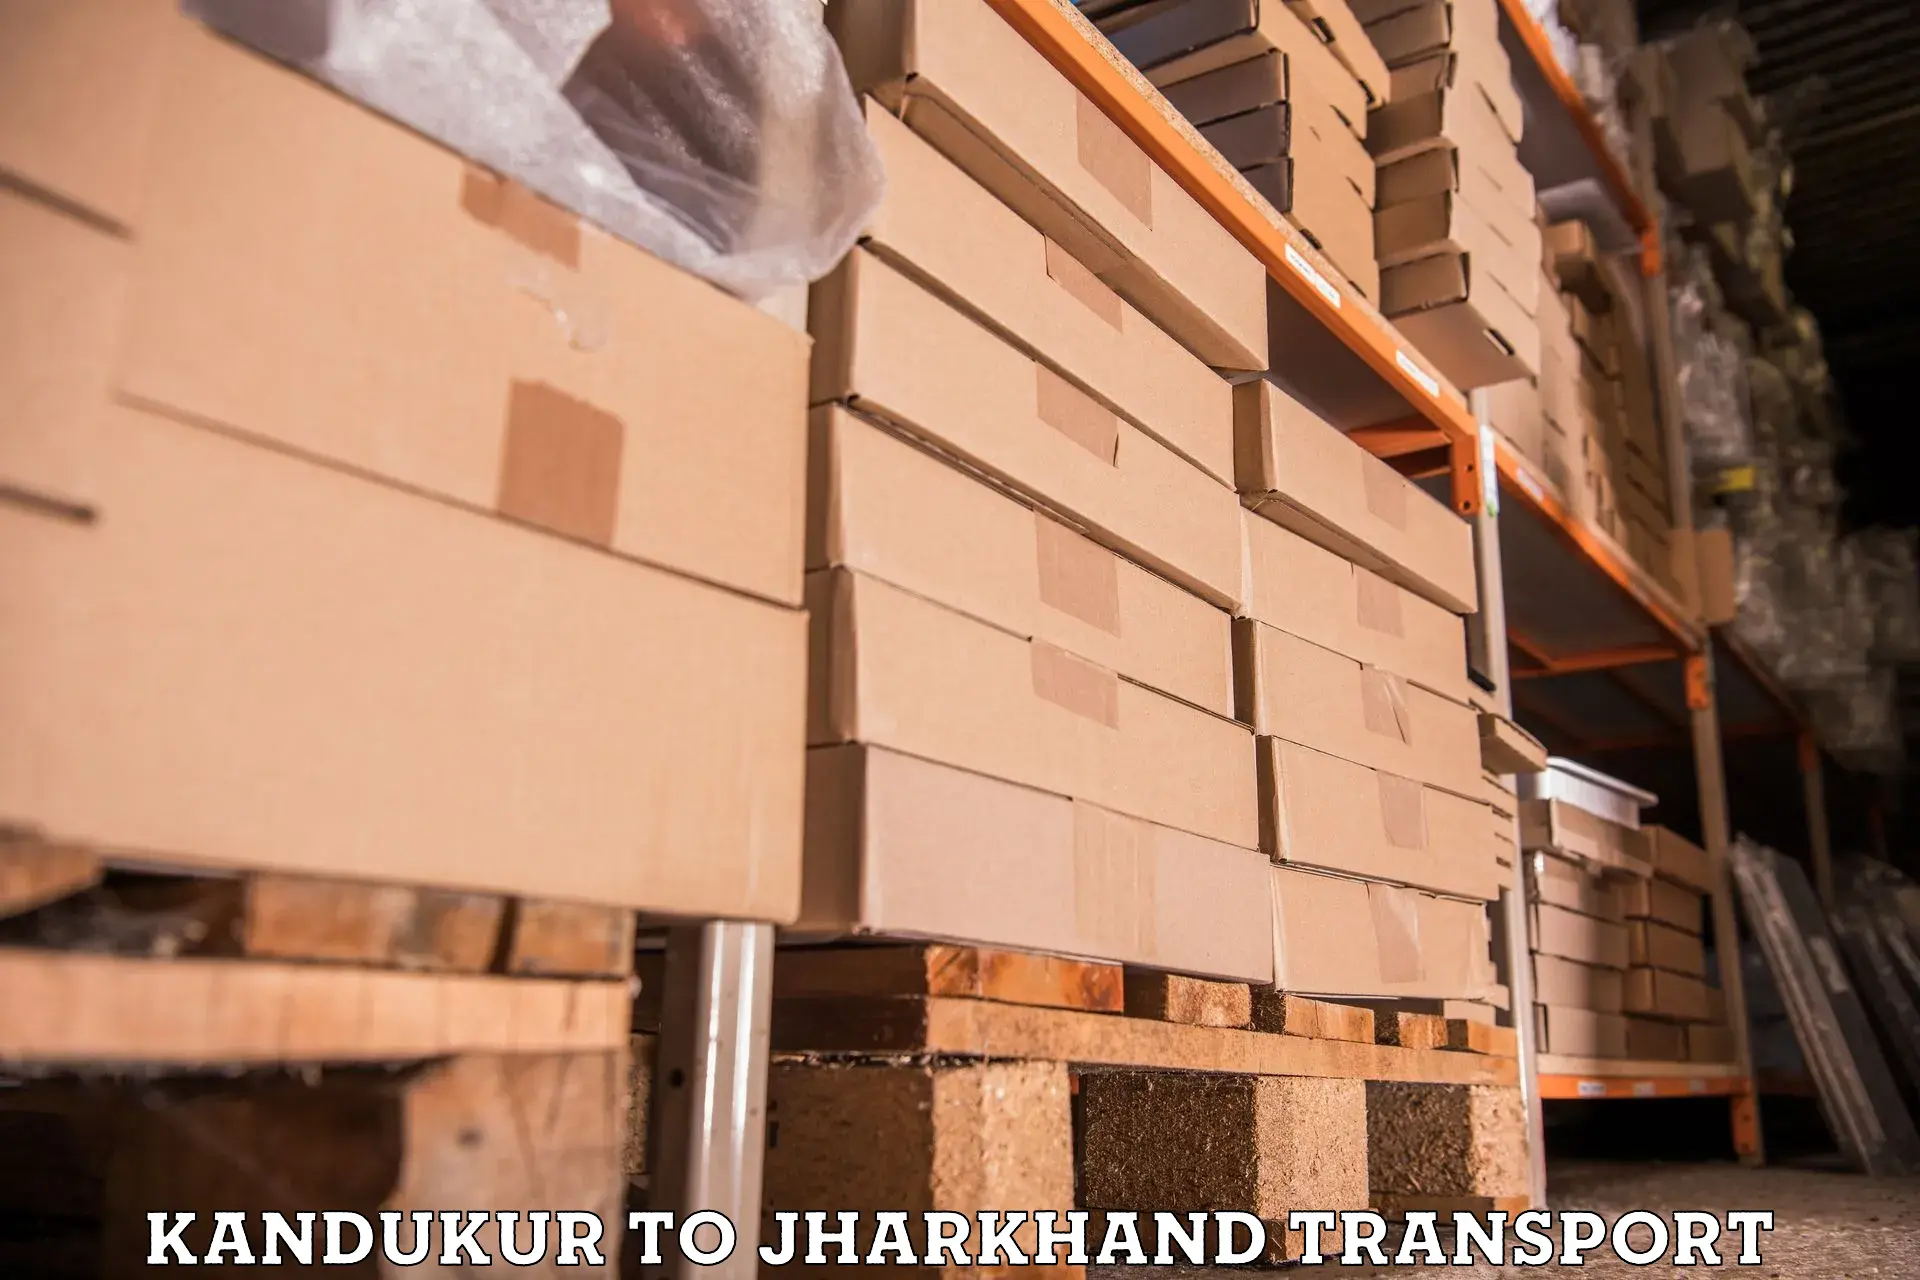 Transport in sharing Kandukur to Godda